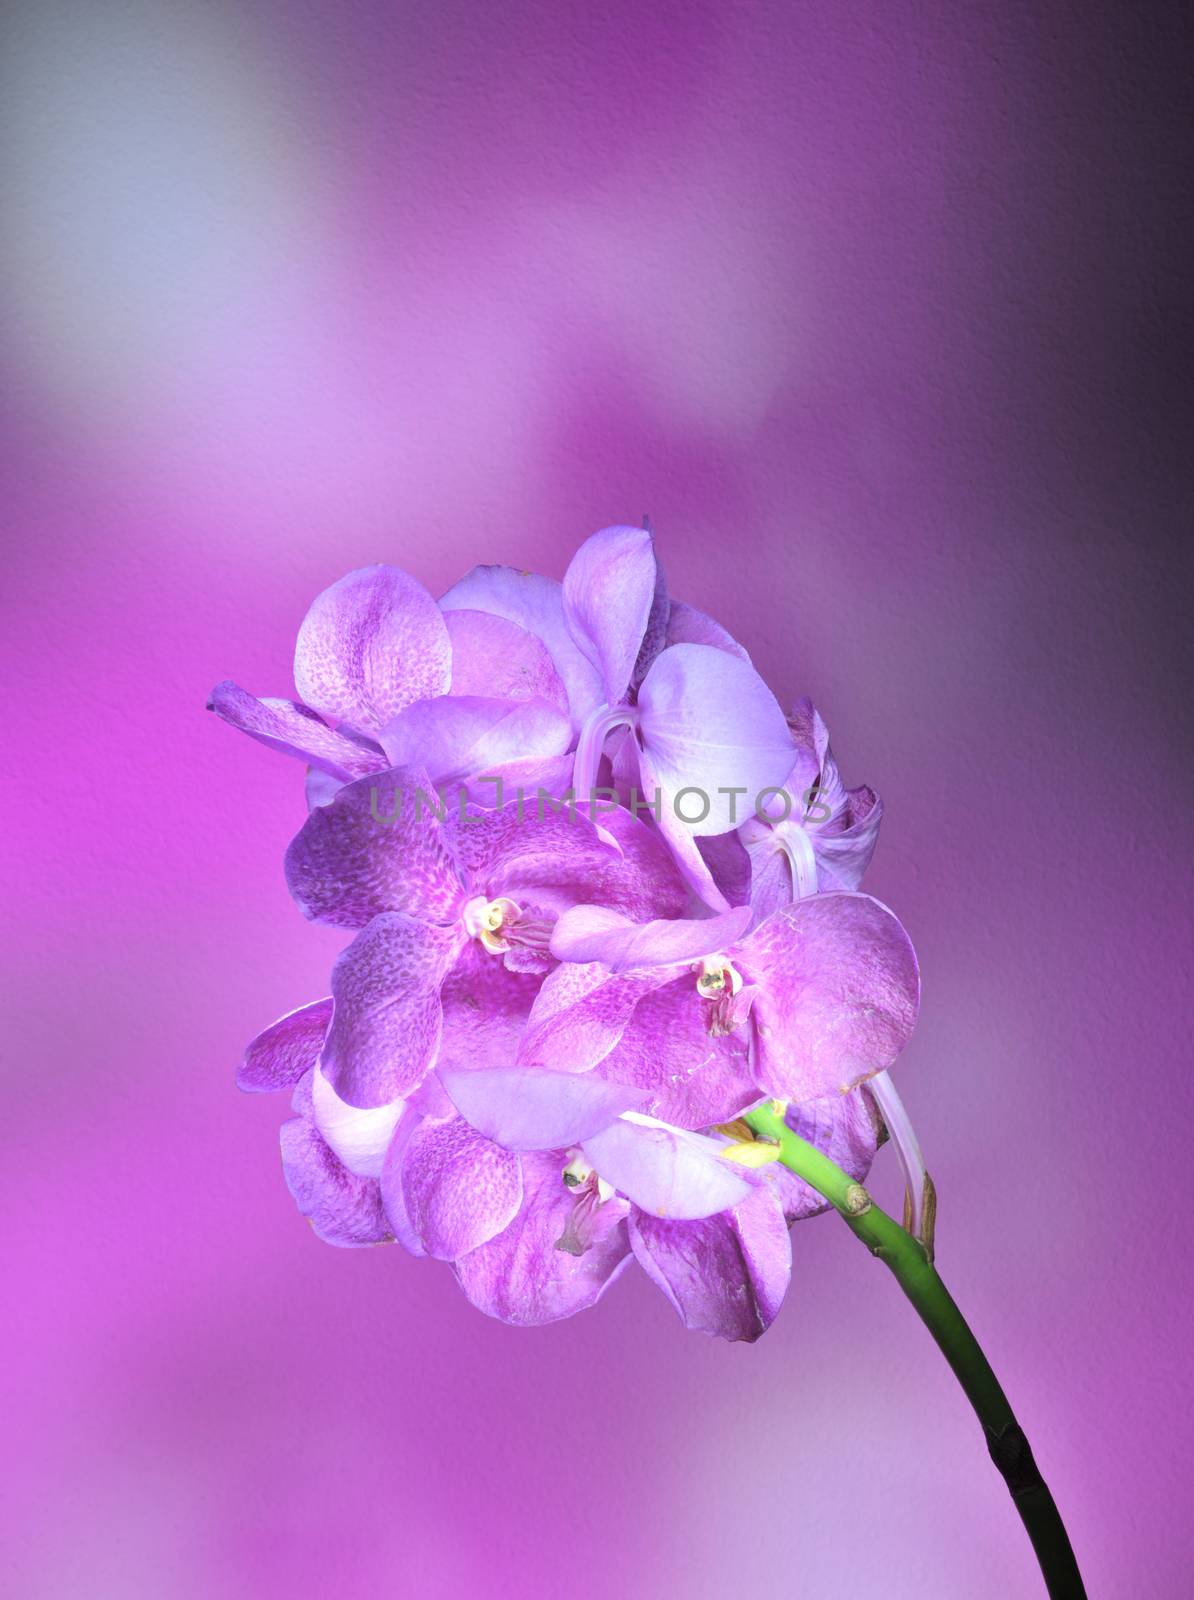 flower on a dark background by A_Karim